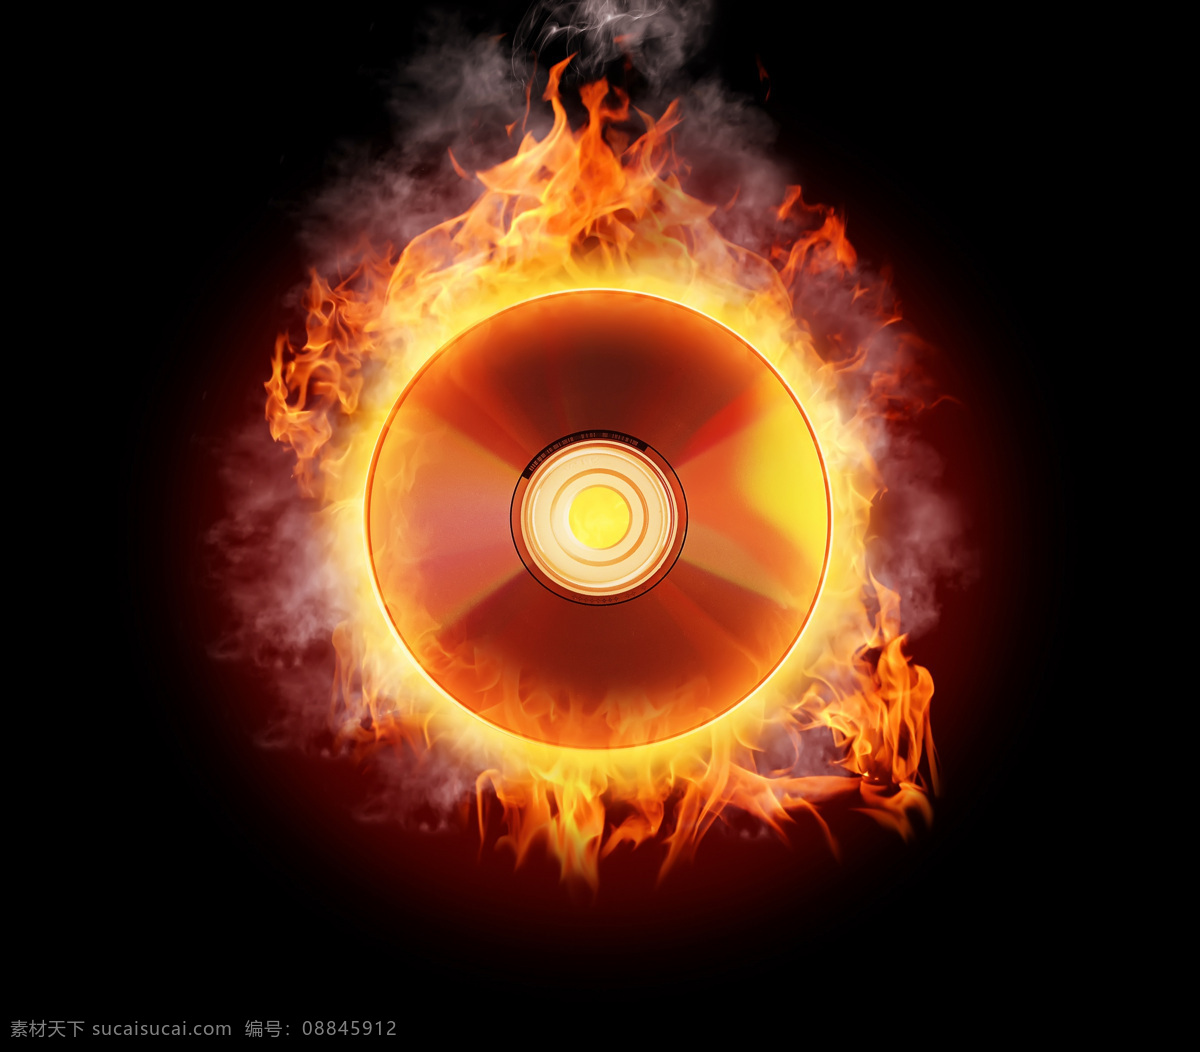 超酷 绚丽 火焰 火光 效果 火焰光碟 光碟 火焰光盘 烈焰 火苗 磁盘 音乐光碟 碟片 光盘 高清图片 光束类 现代科技